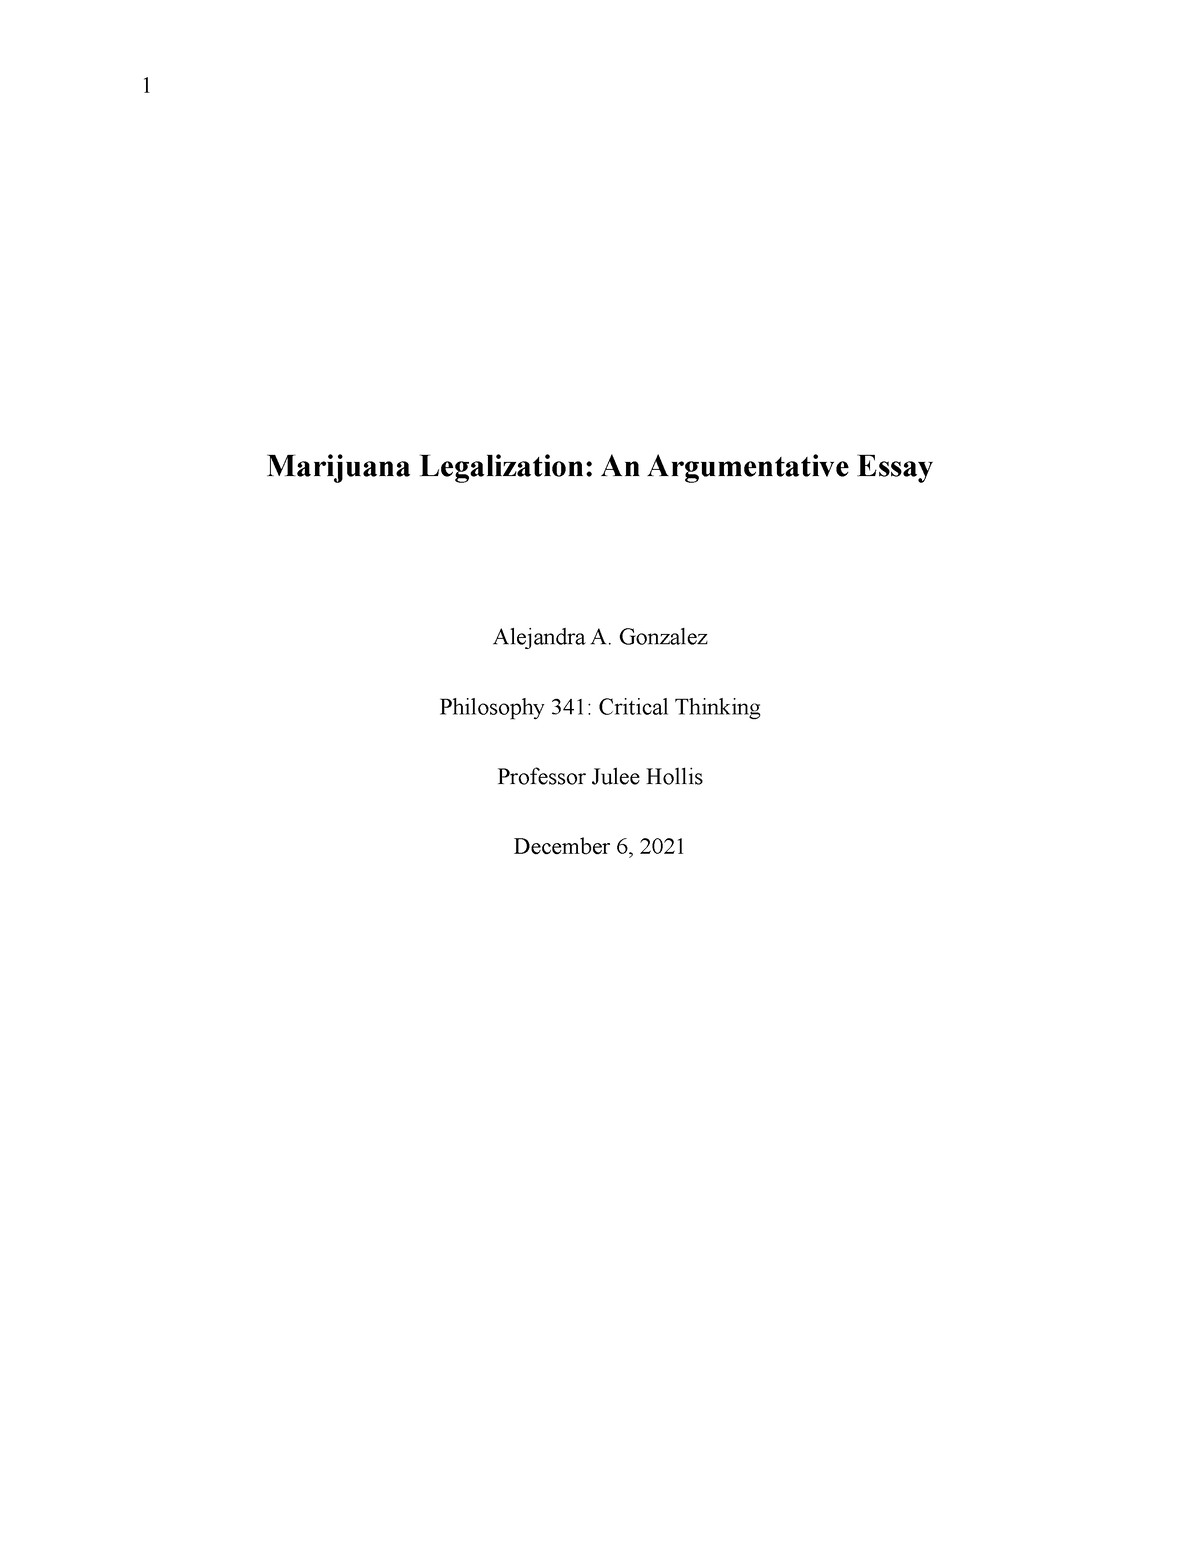 argumentative essay on legalizing weed